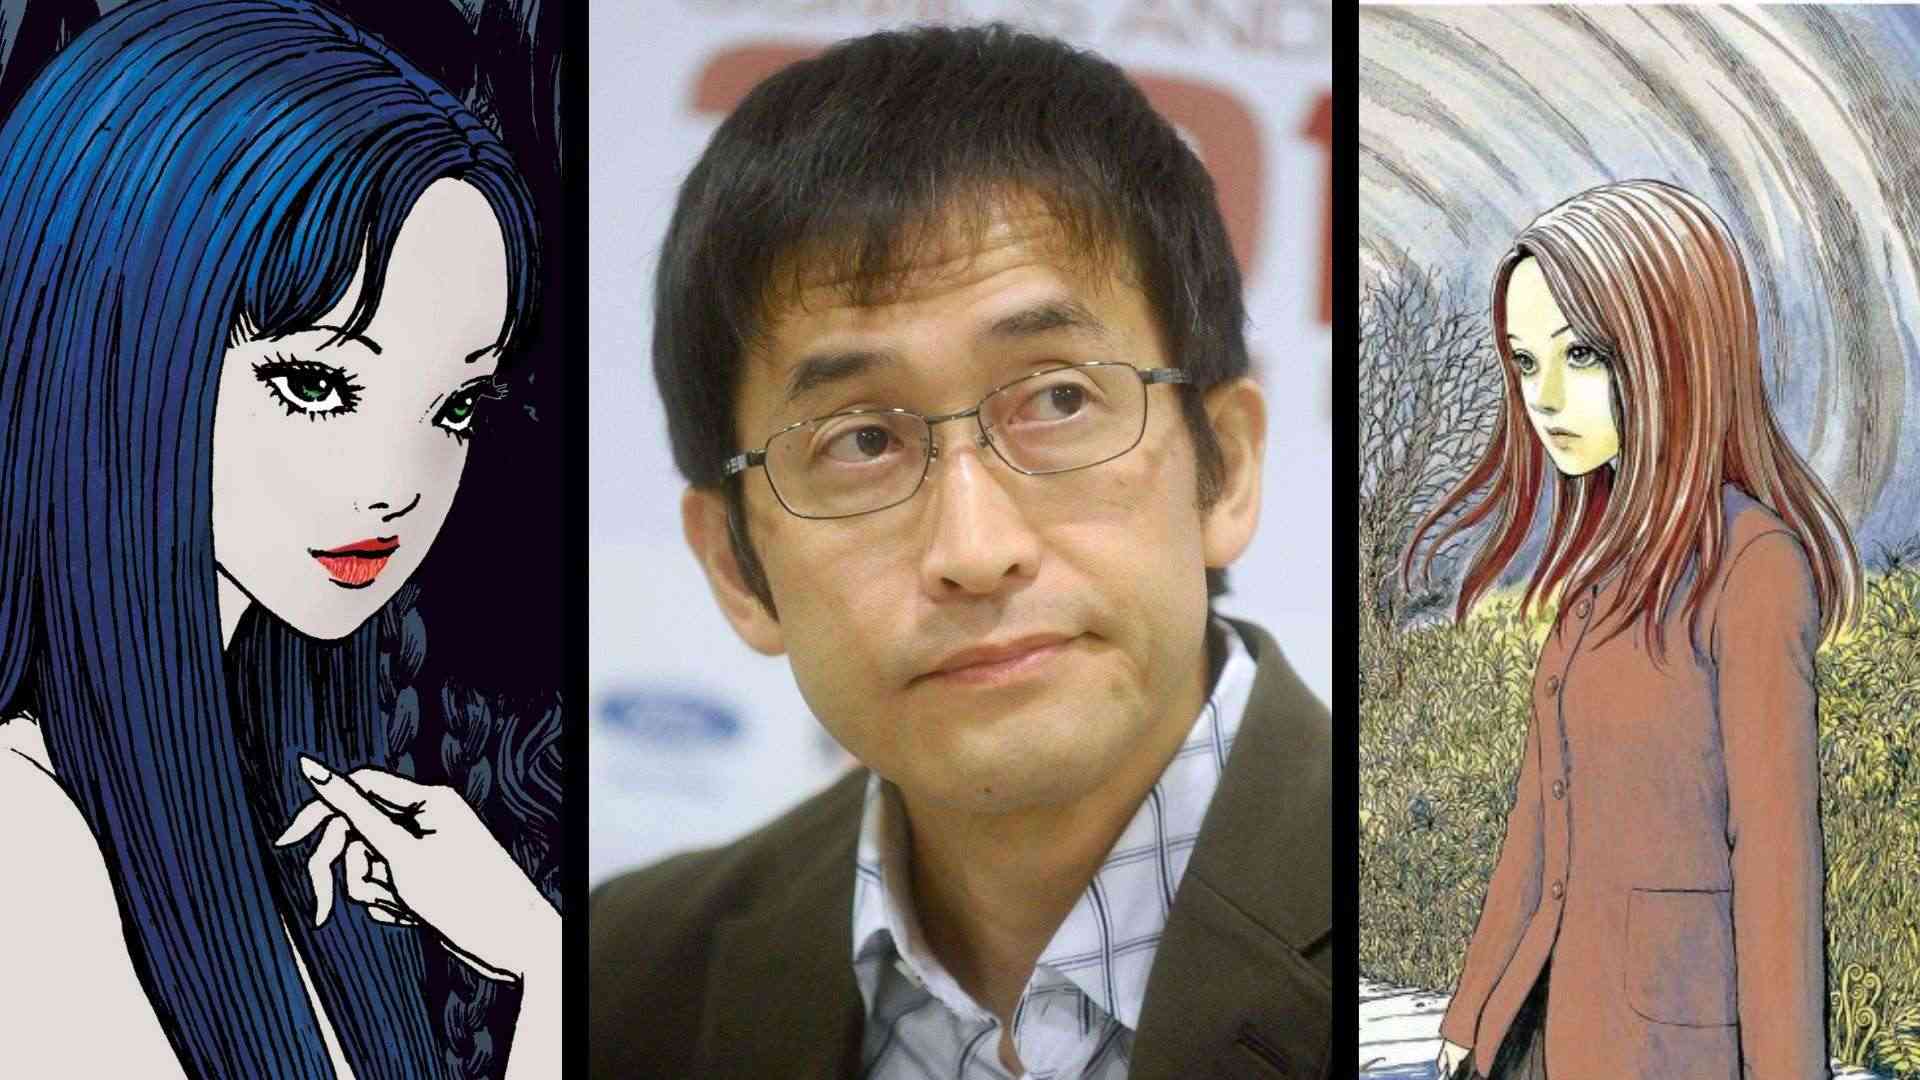 Manga kinh dị của họa sĩ Junji Ito 'bơi ra biển lớn' khi được Hollywood mua bản quyền và chuyển thể thành phim